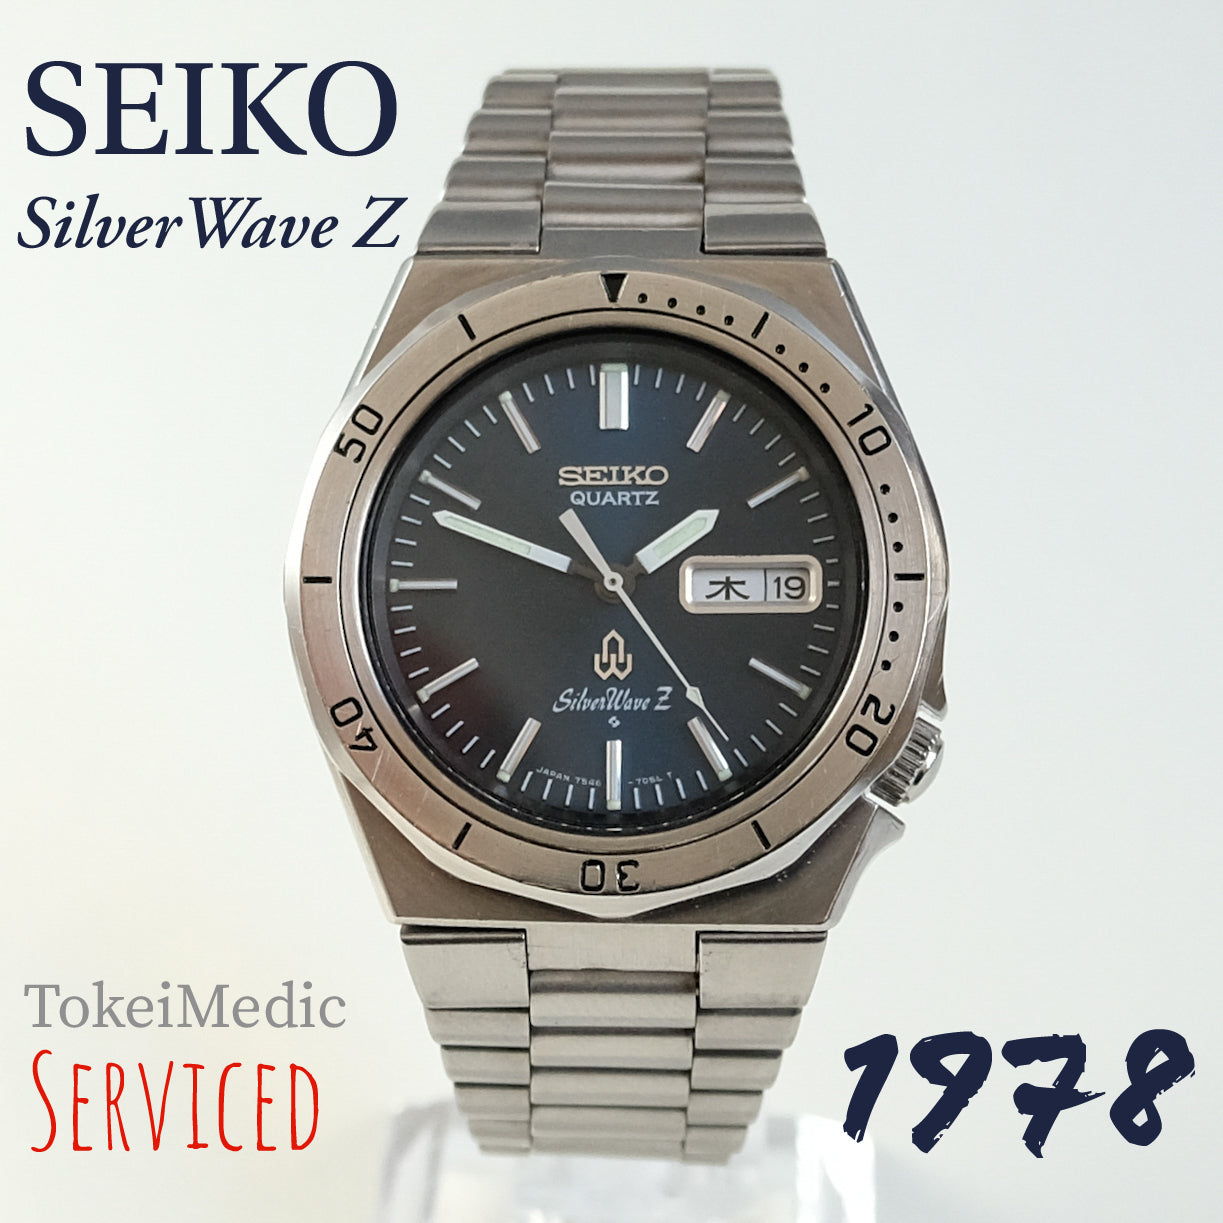 1978 Seiko Quartz SilverWave Z 7546-7040 – TokeiMedic